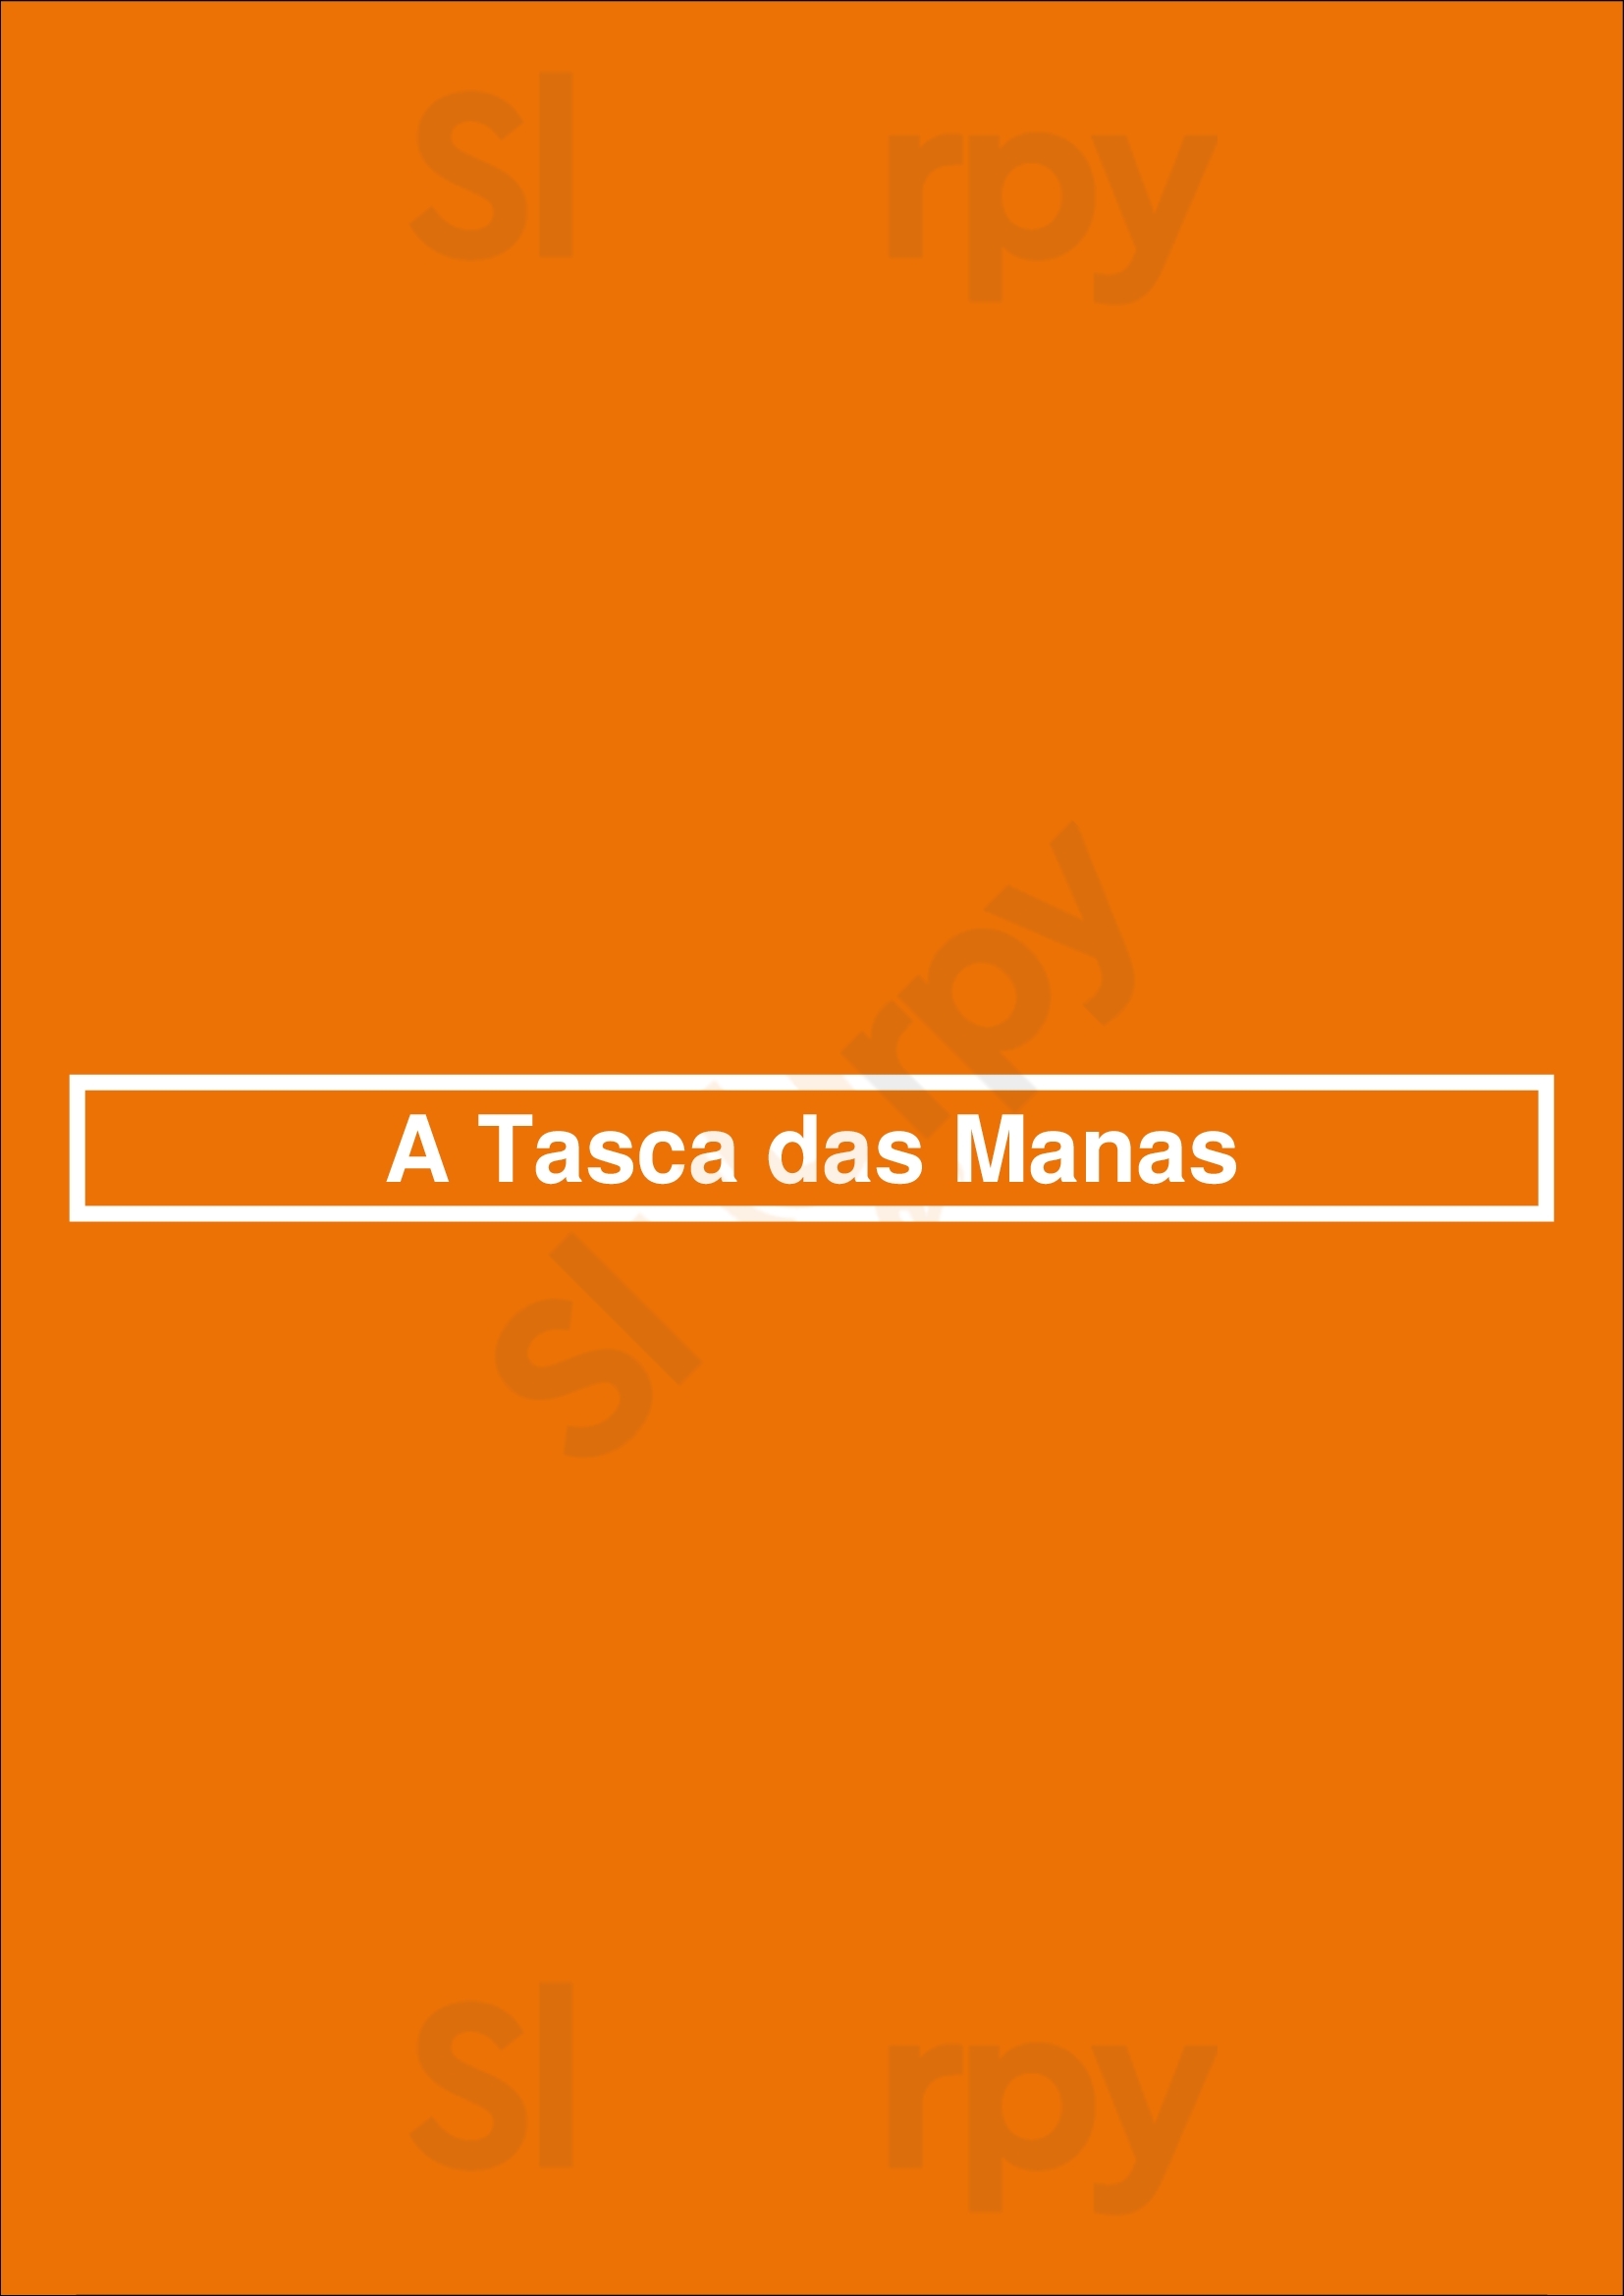 A Tasca Das Manas Lisboa Menu - 1